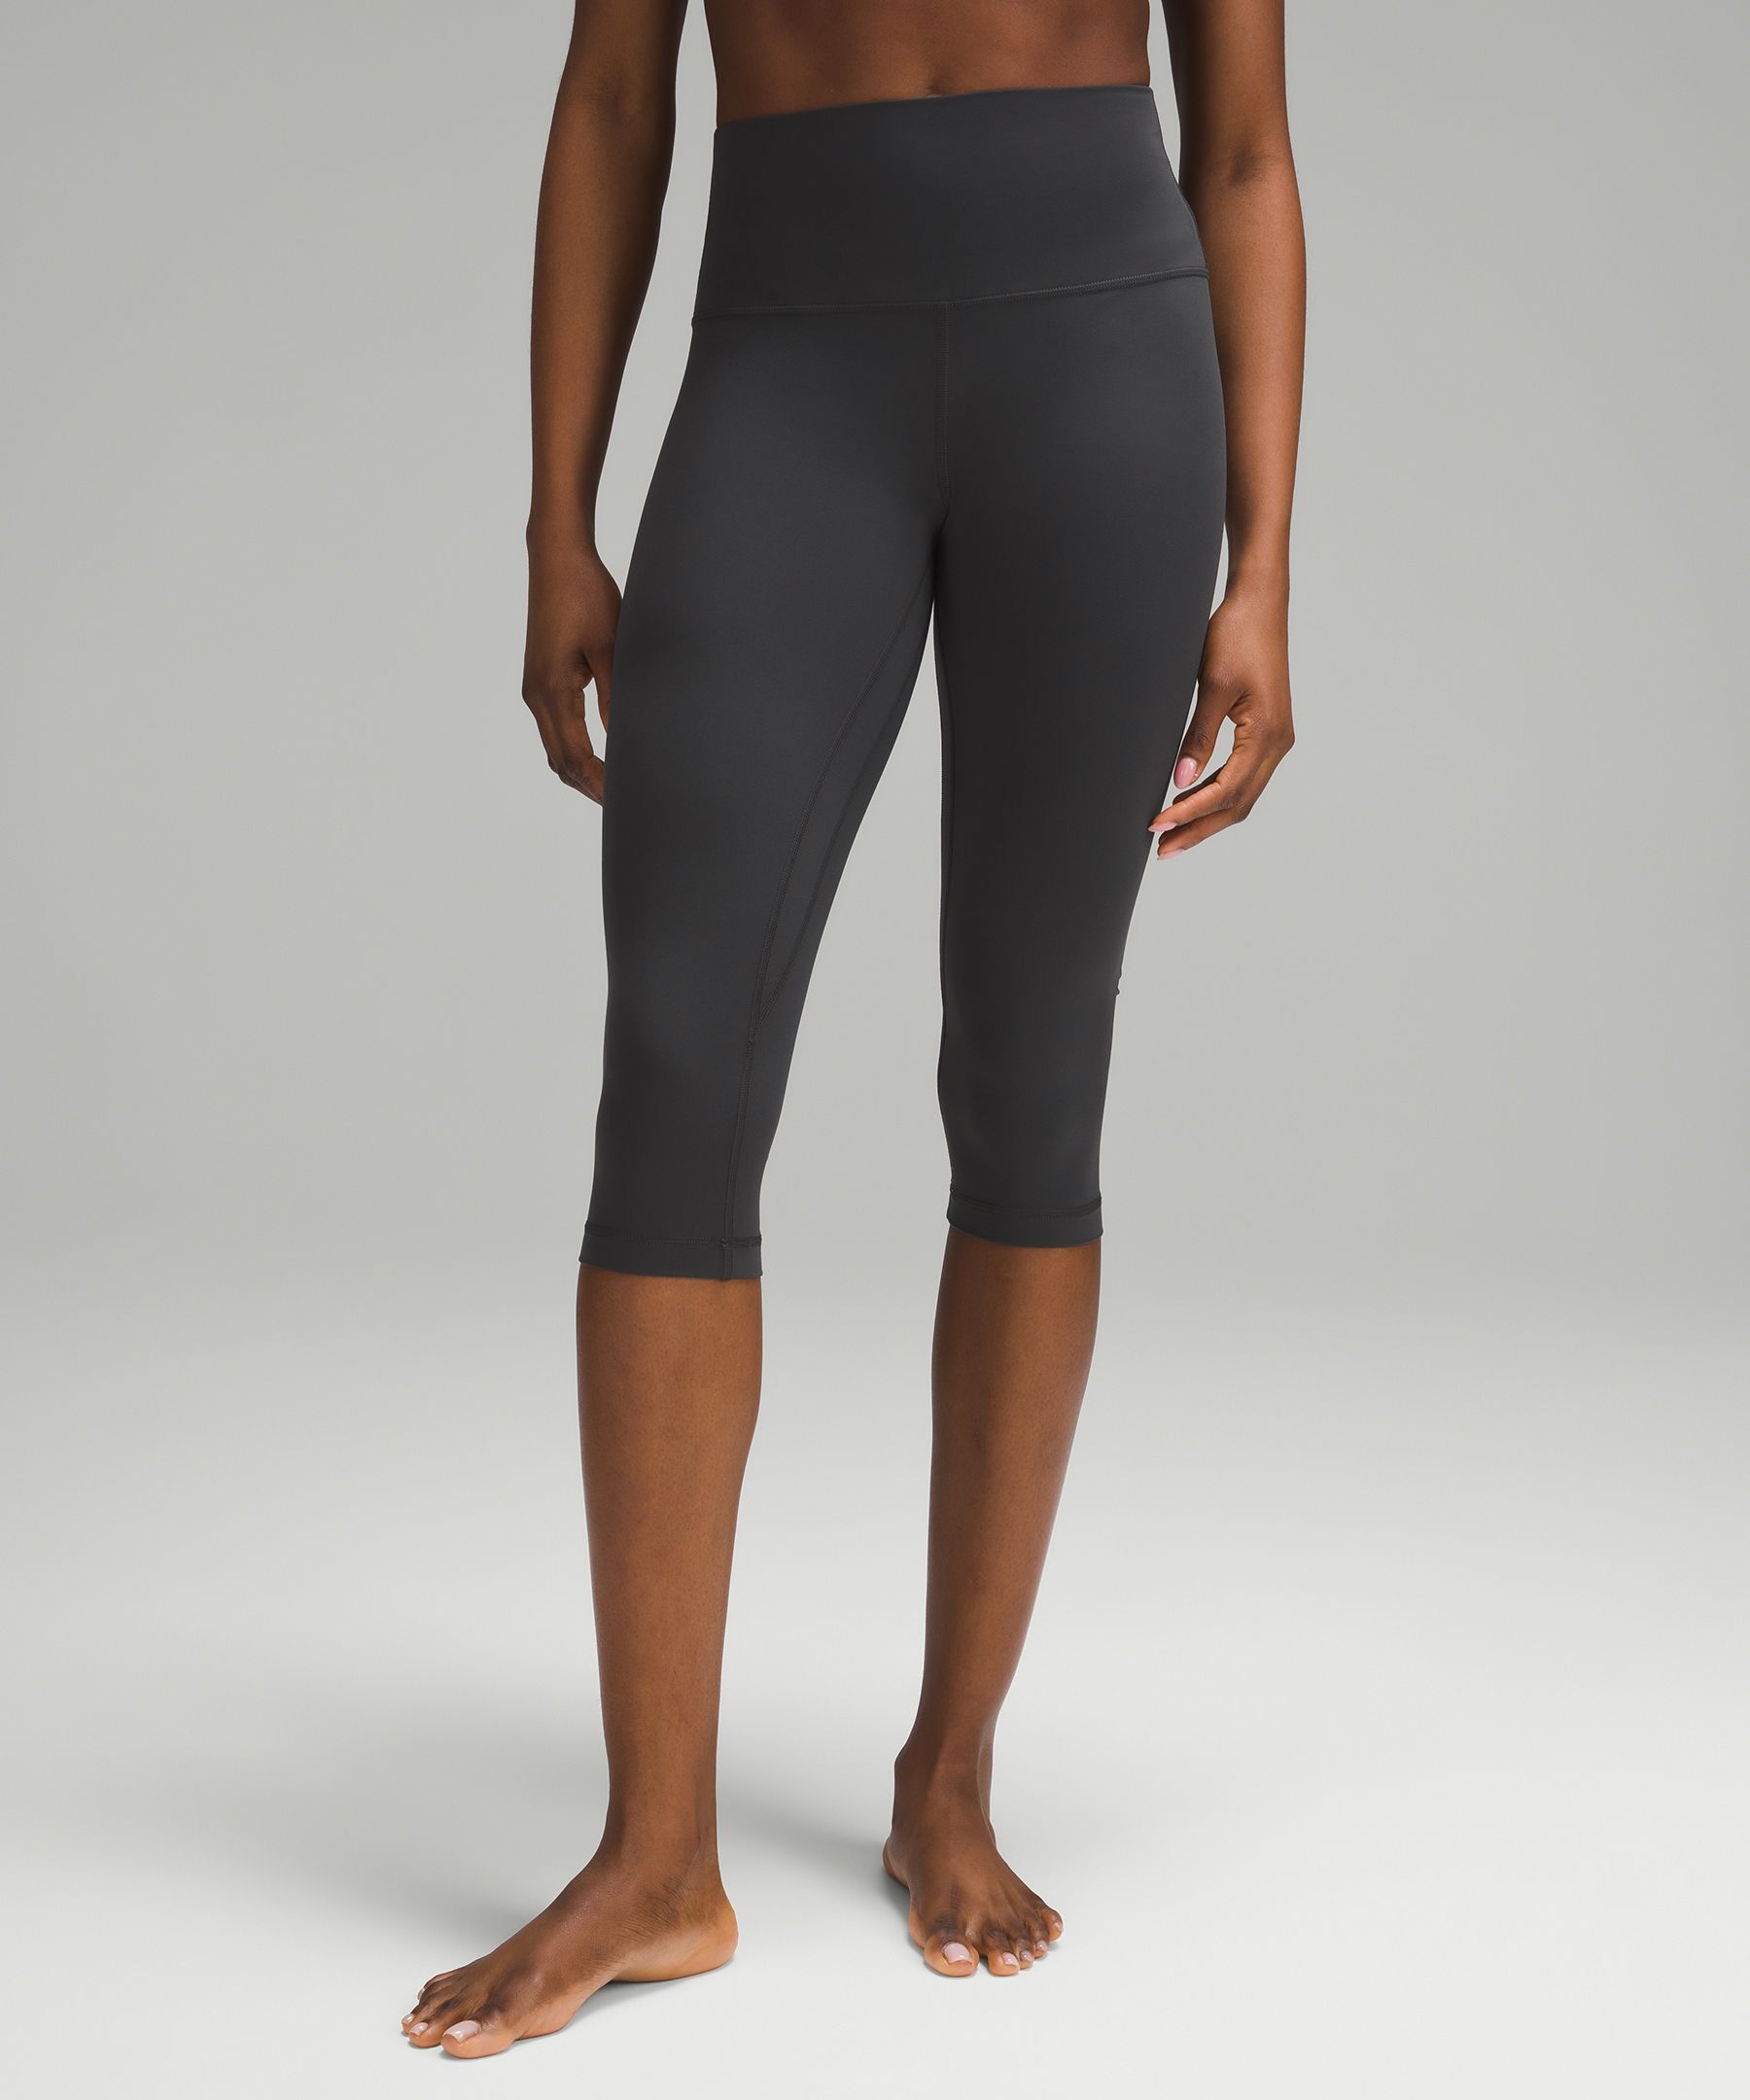 Lululemon Align Capri Leggings Black Green Size 6 Zipper Pocket Stretch  Yoga - $54 - From ChasingTags